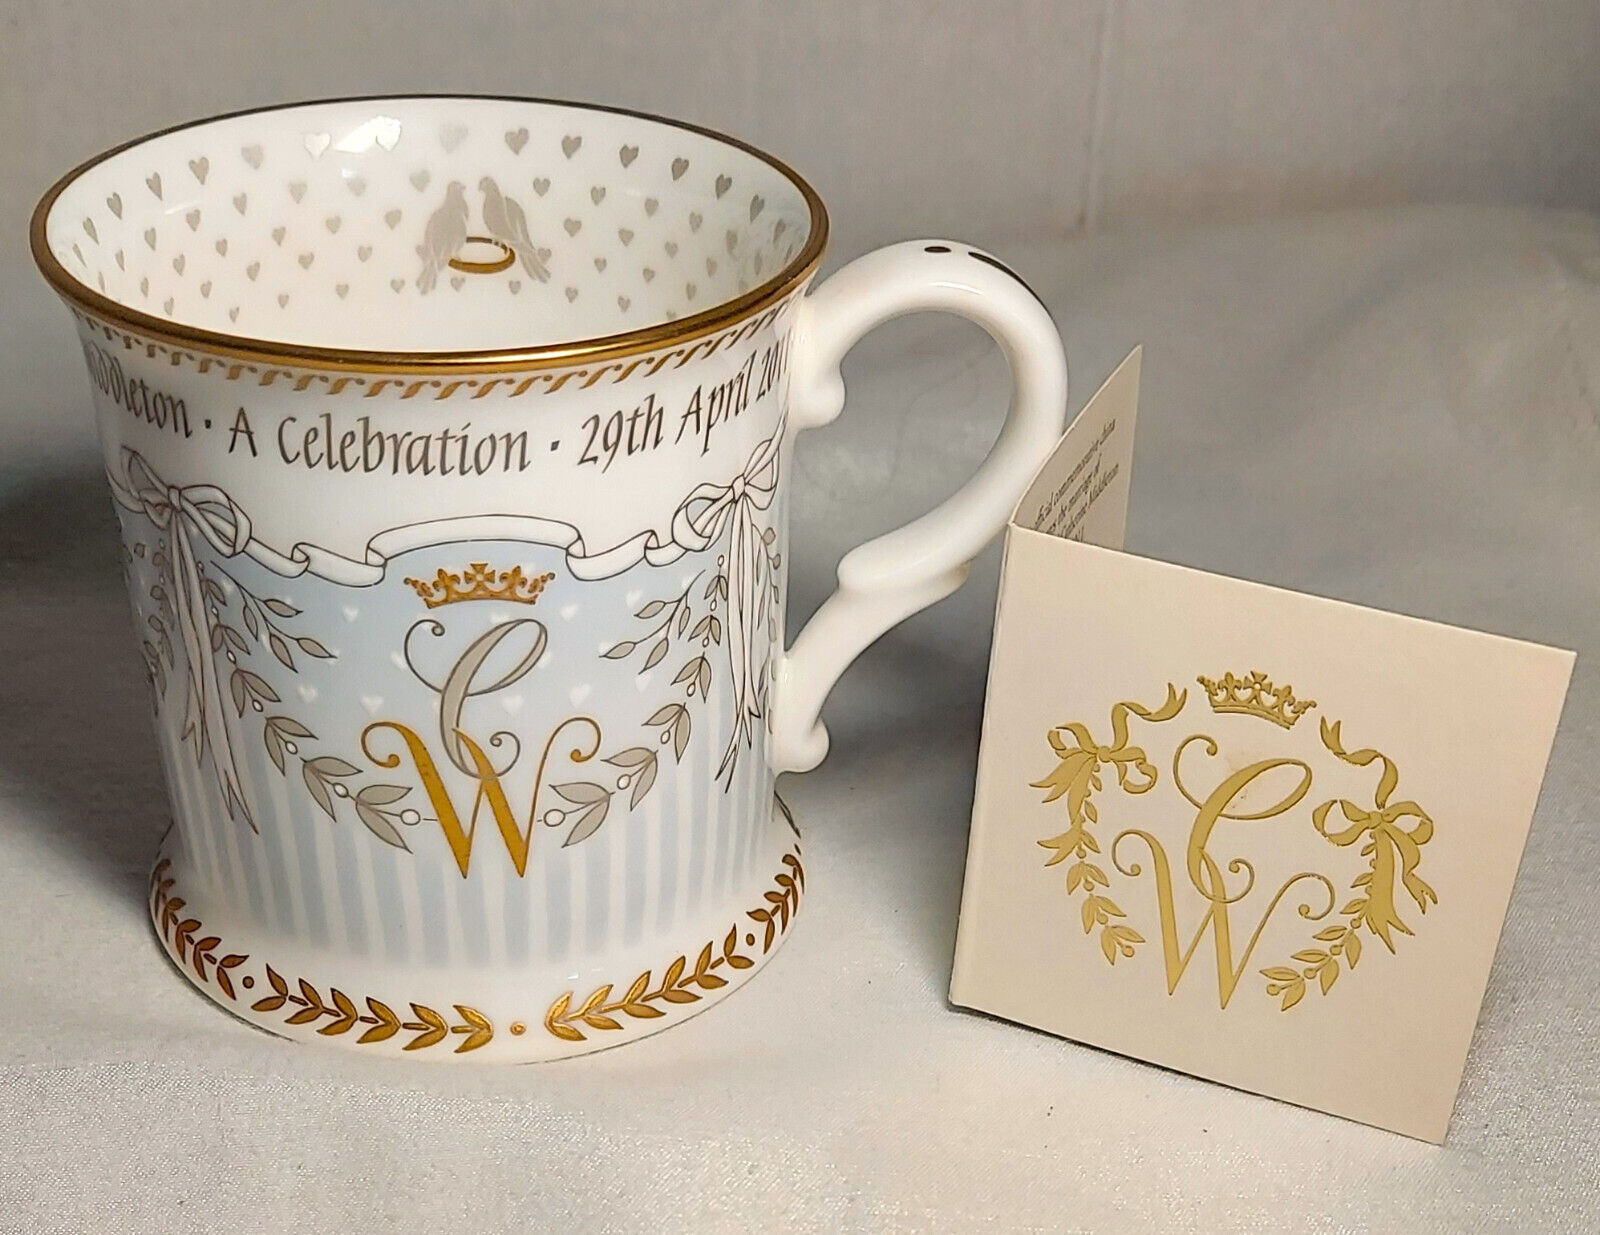 Celebration Mug of Prince William & Catherine Royal Wedding finished in 22k Gold